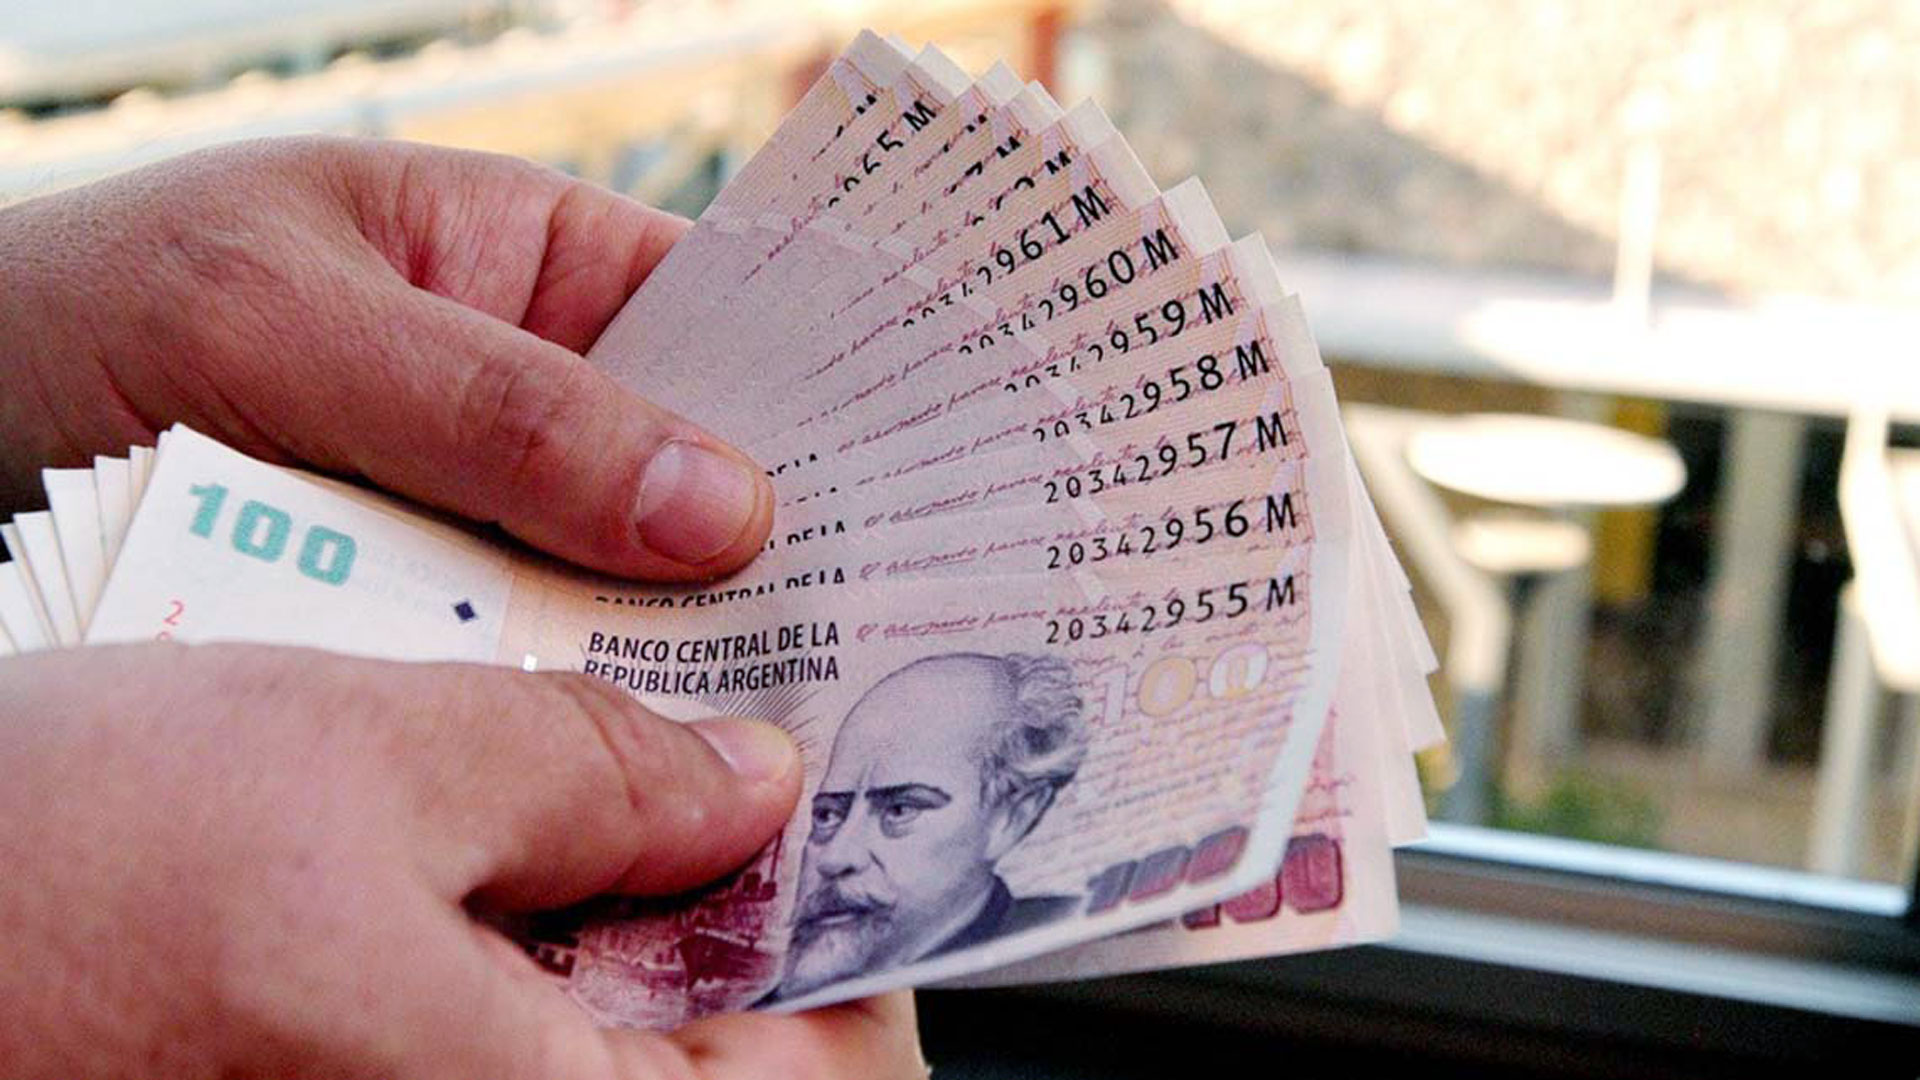 Dos de cada tres billetes en circulación son de 100 pesos